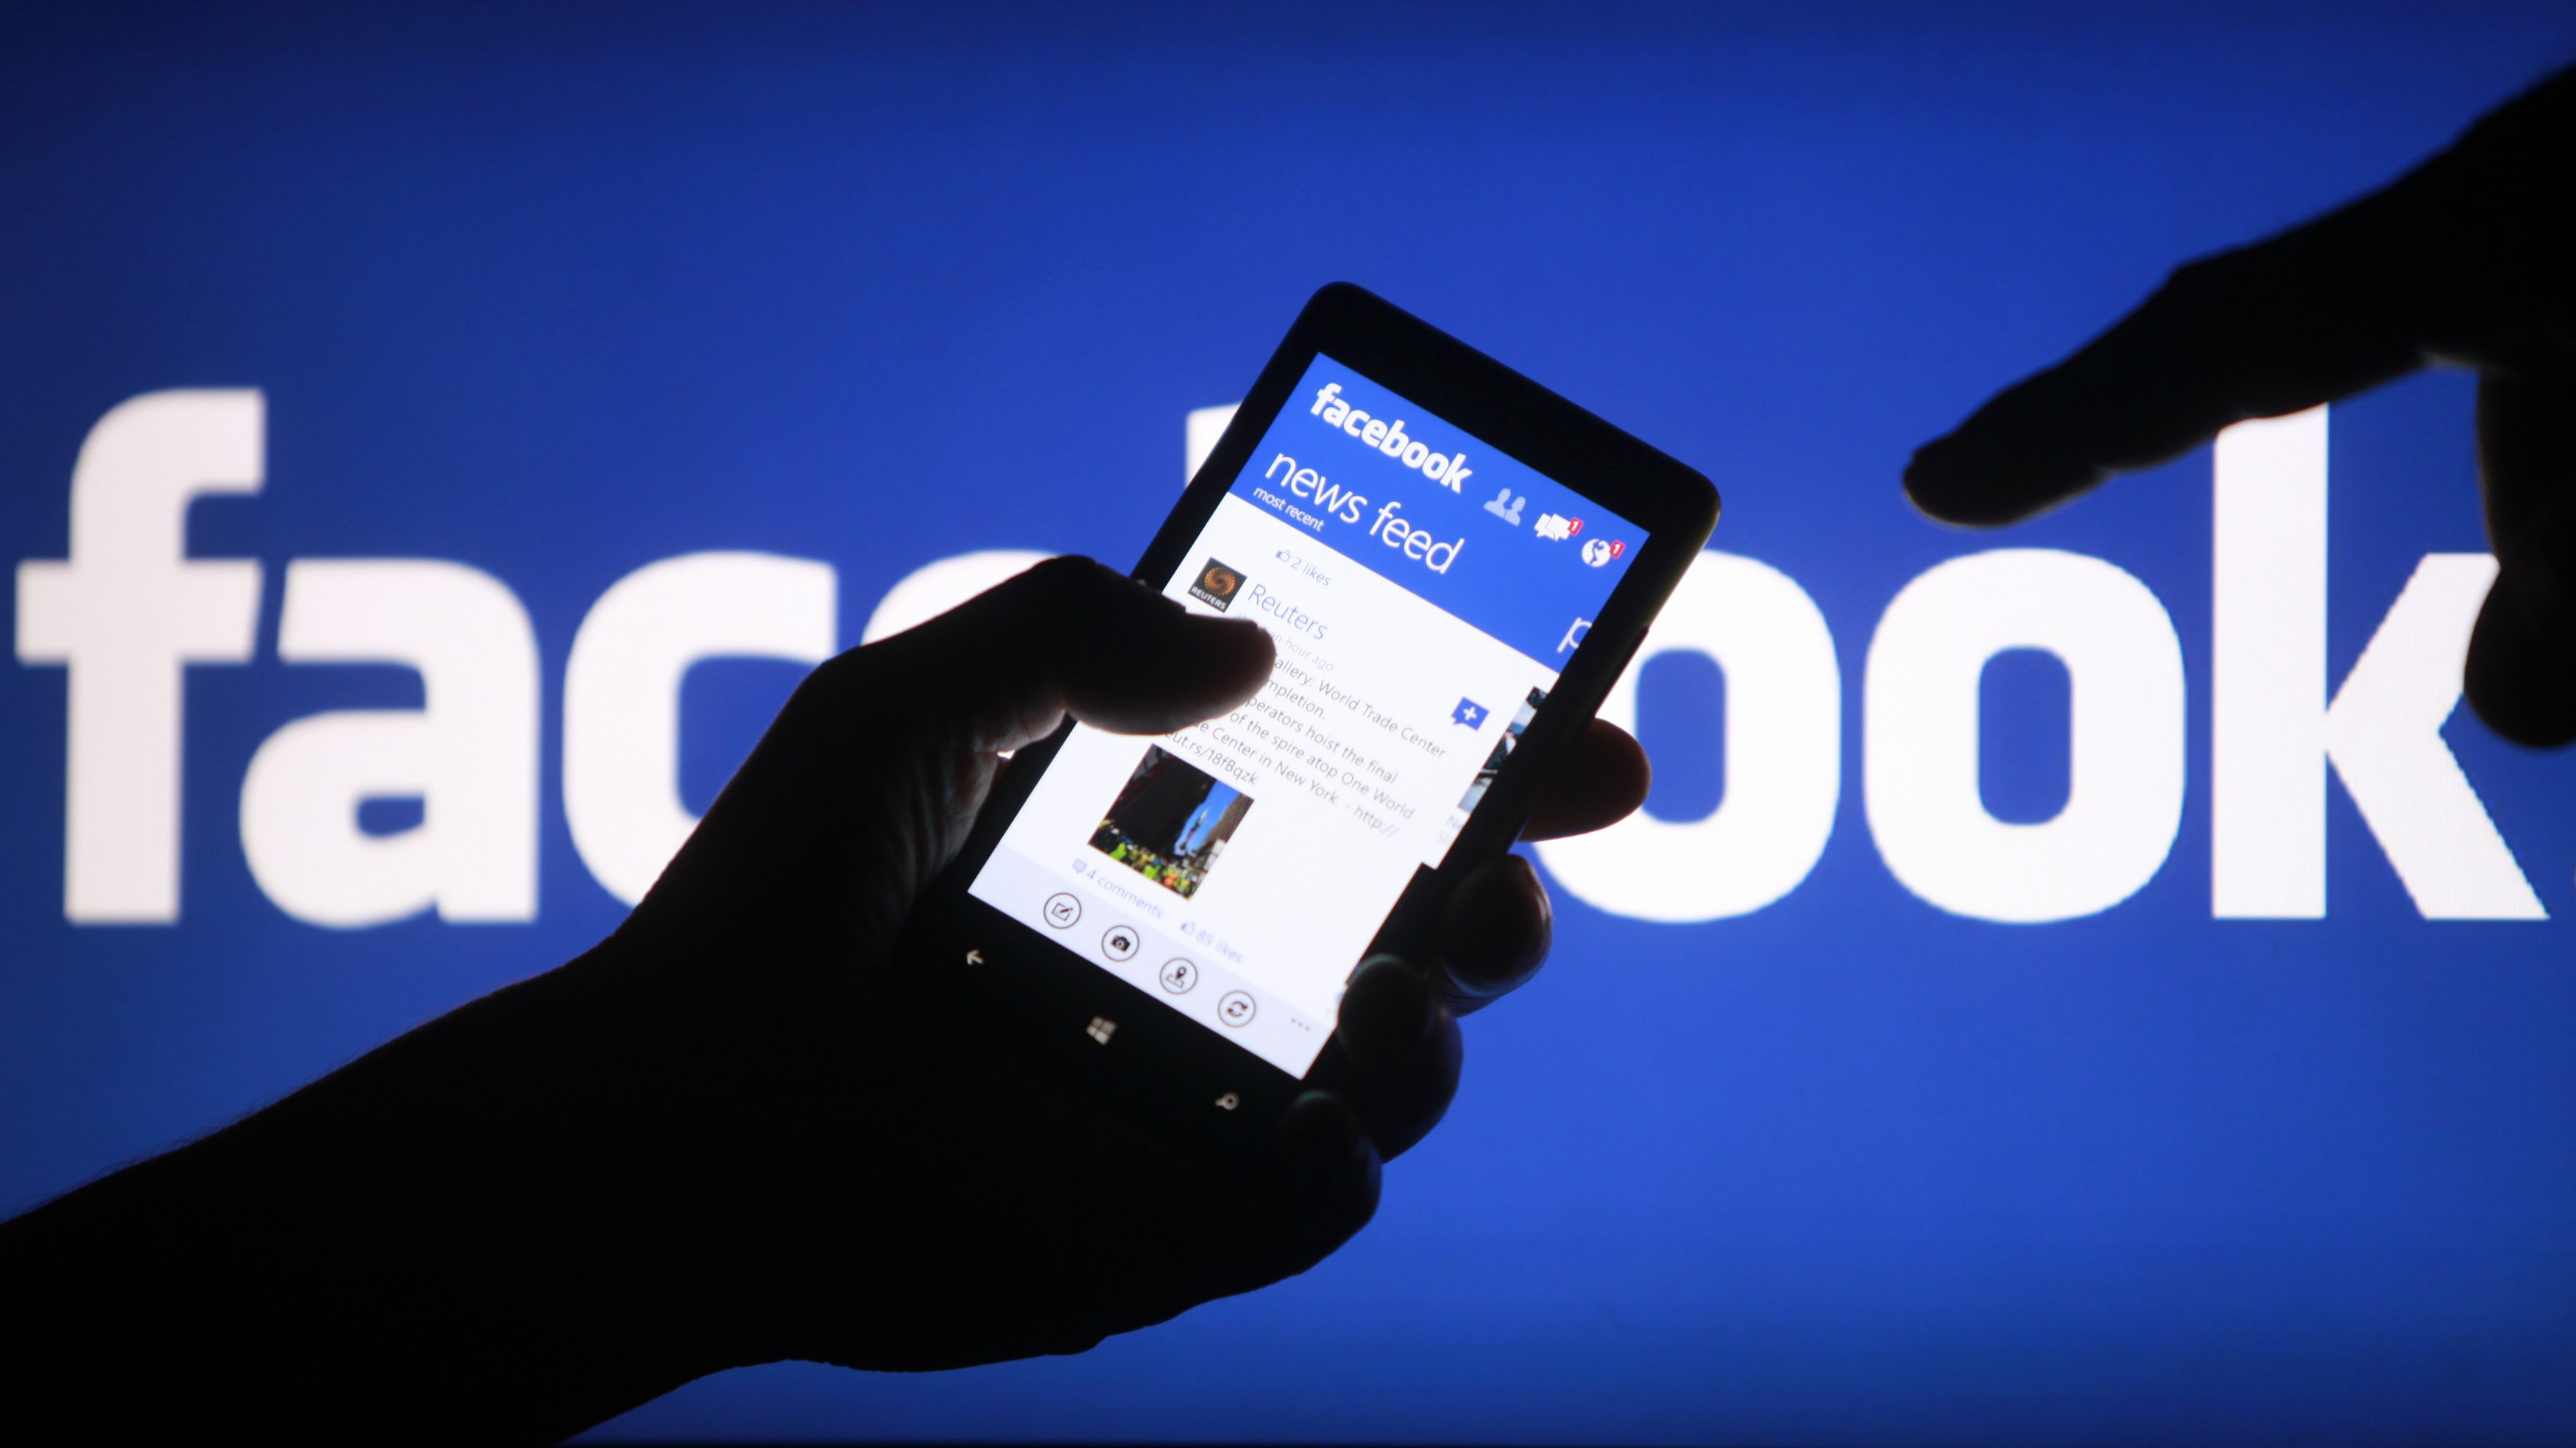 Crianças não devem ter acesso ao Facebook, dizem especialistas